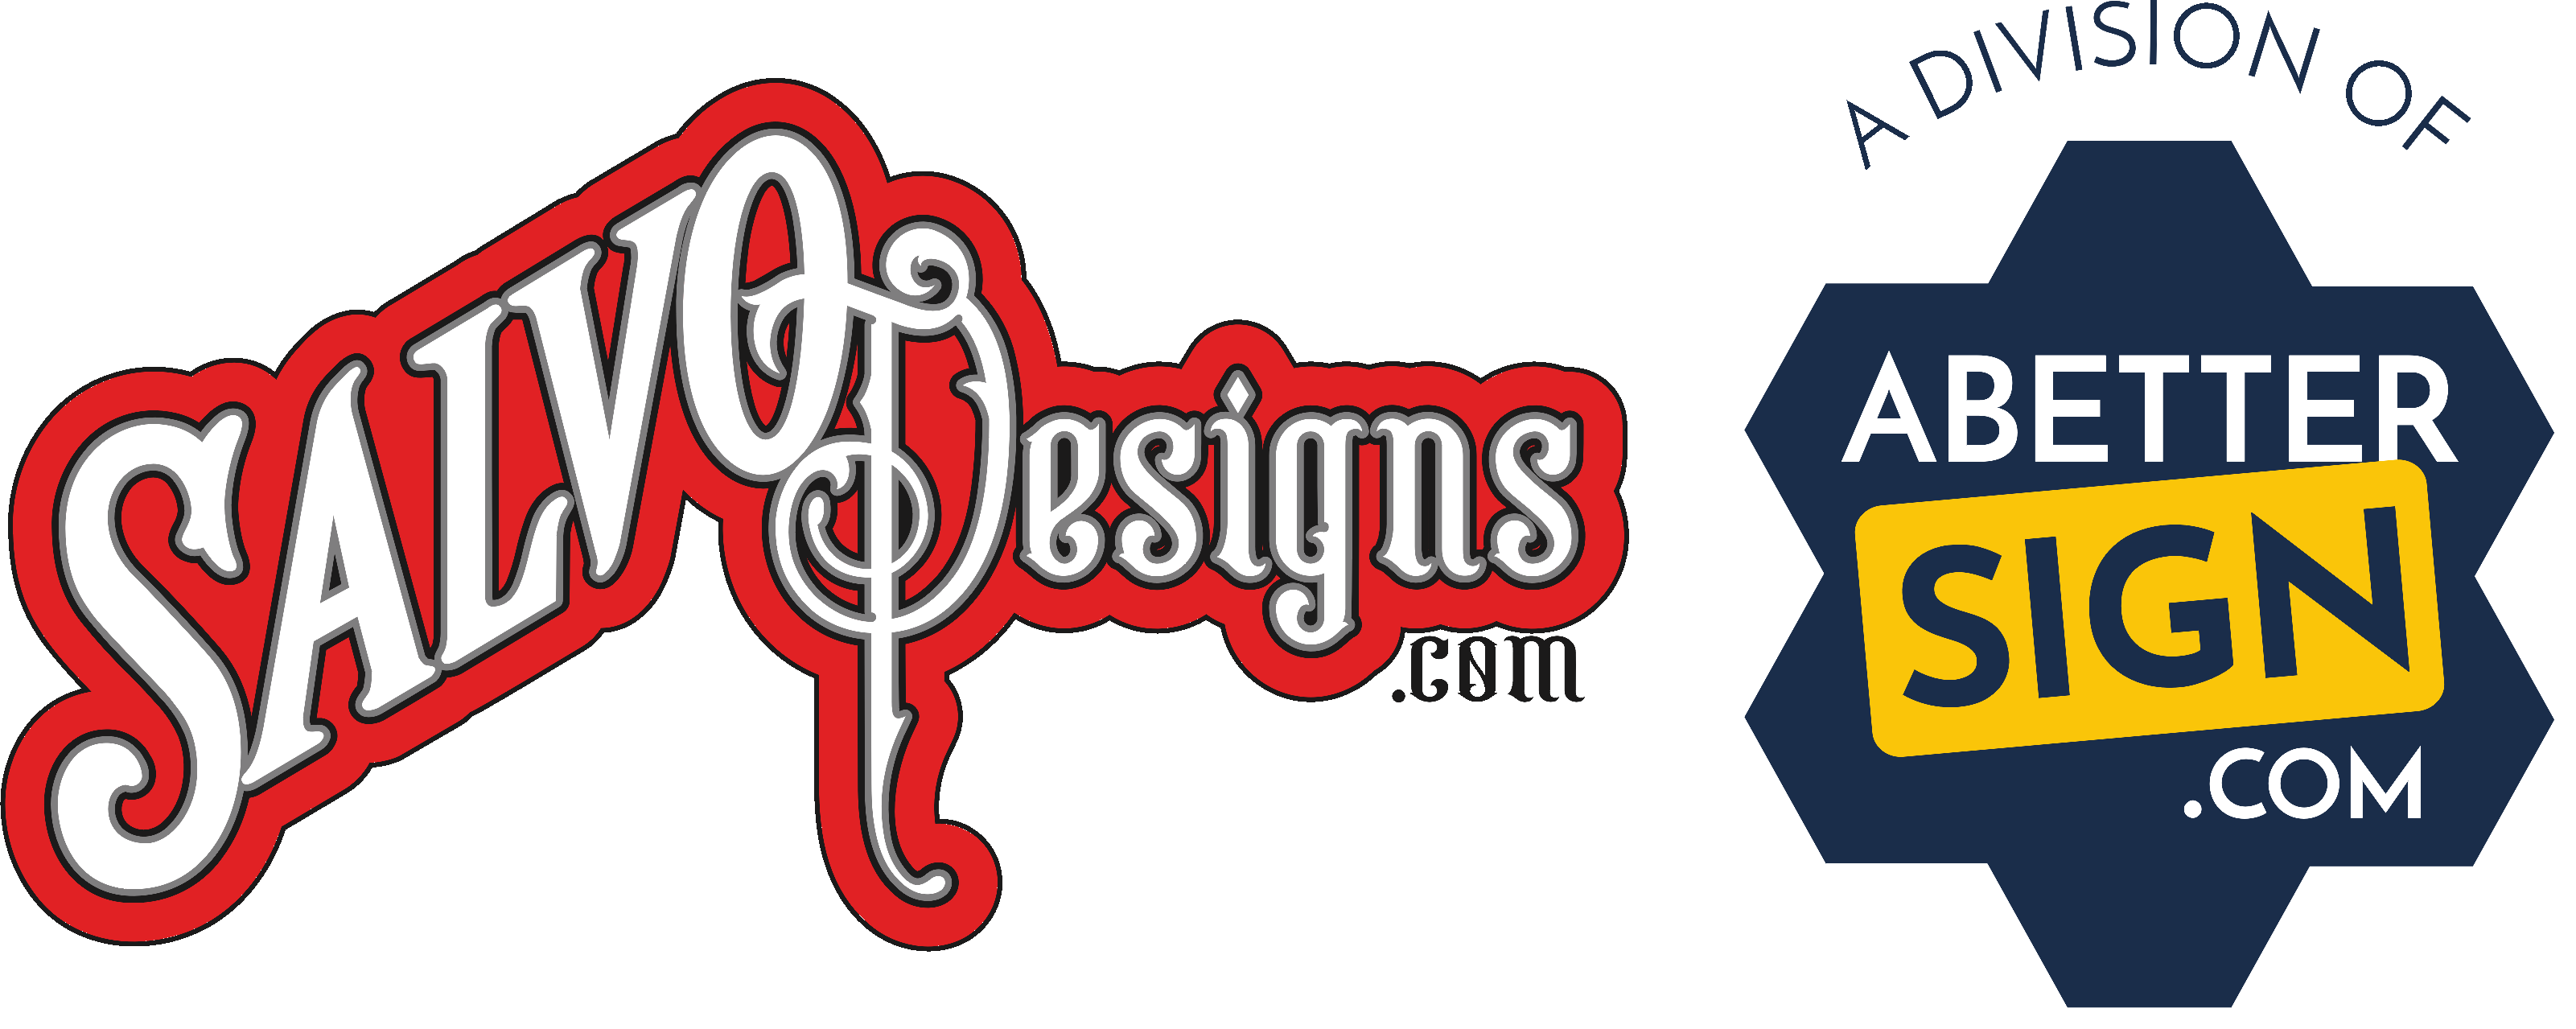 salvodesigns+A Better Sign logos